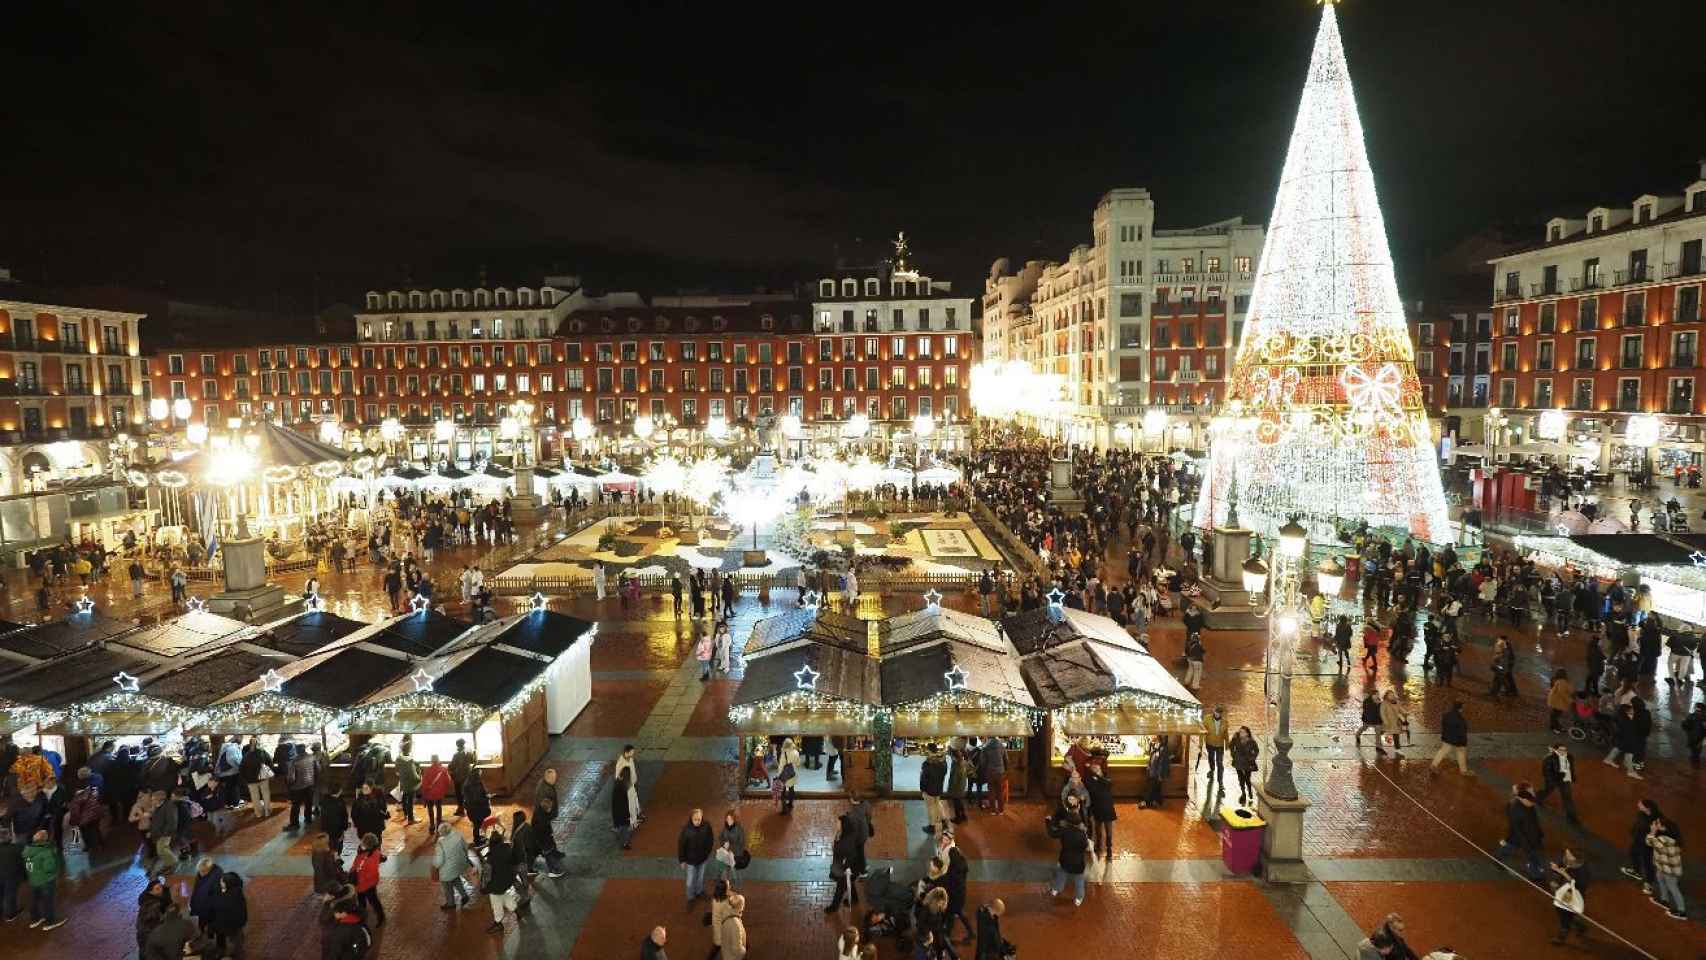 El árbol de los deseos y mercado navideño en la Plaza Mayor de Valladolid